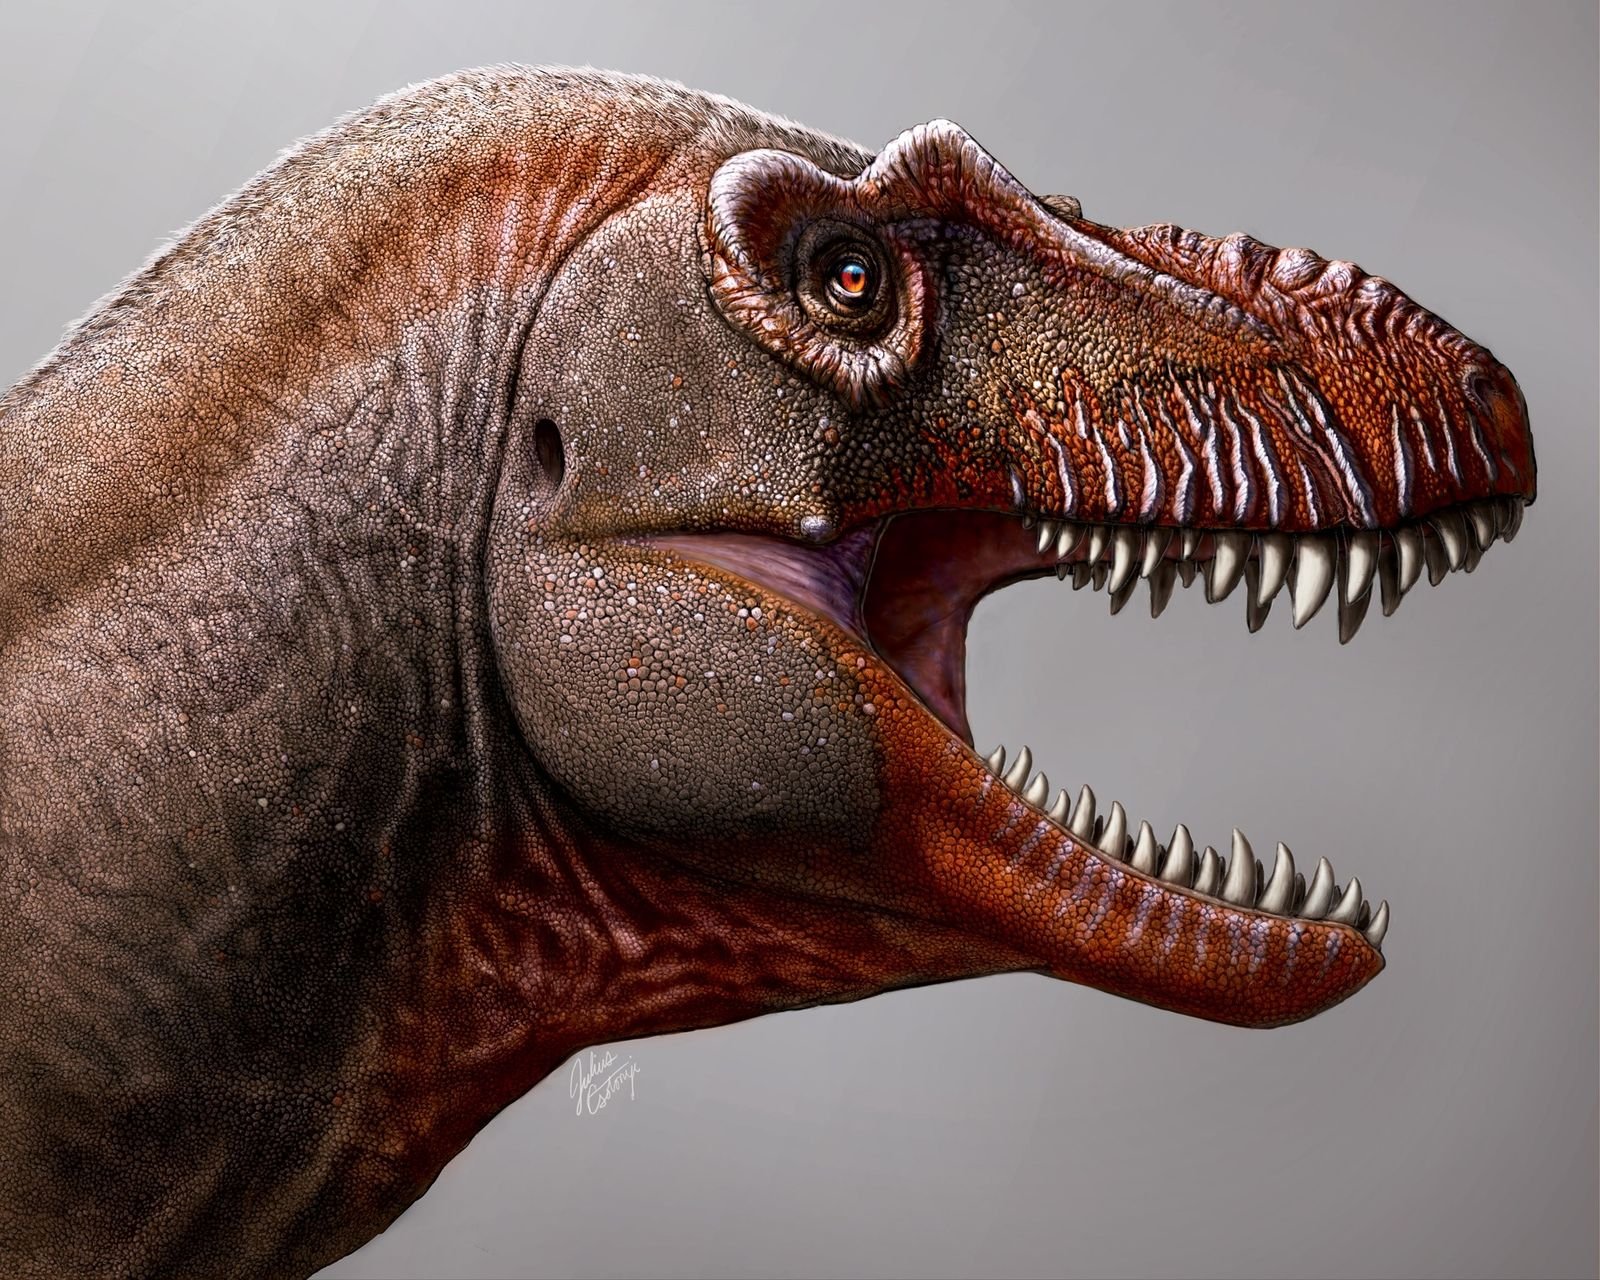 Paléontologie : découverte d'un nouveau tyrannosaure au Canada